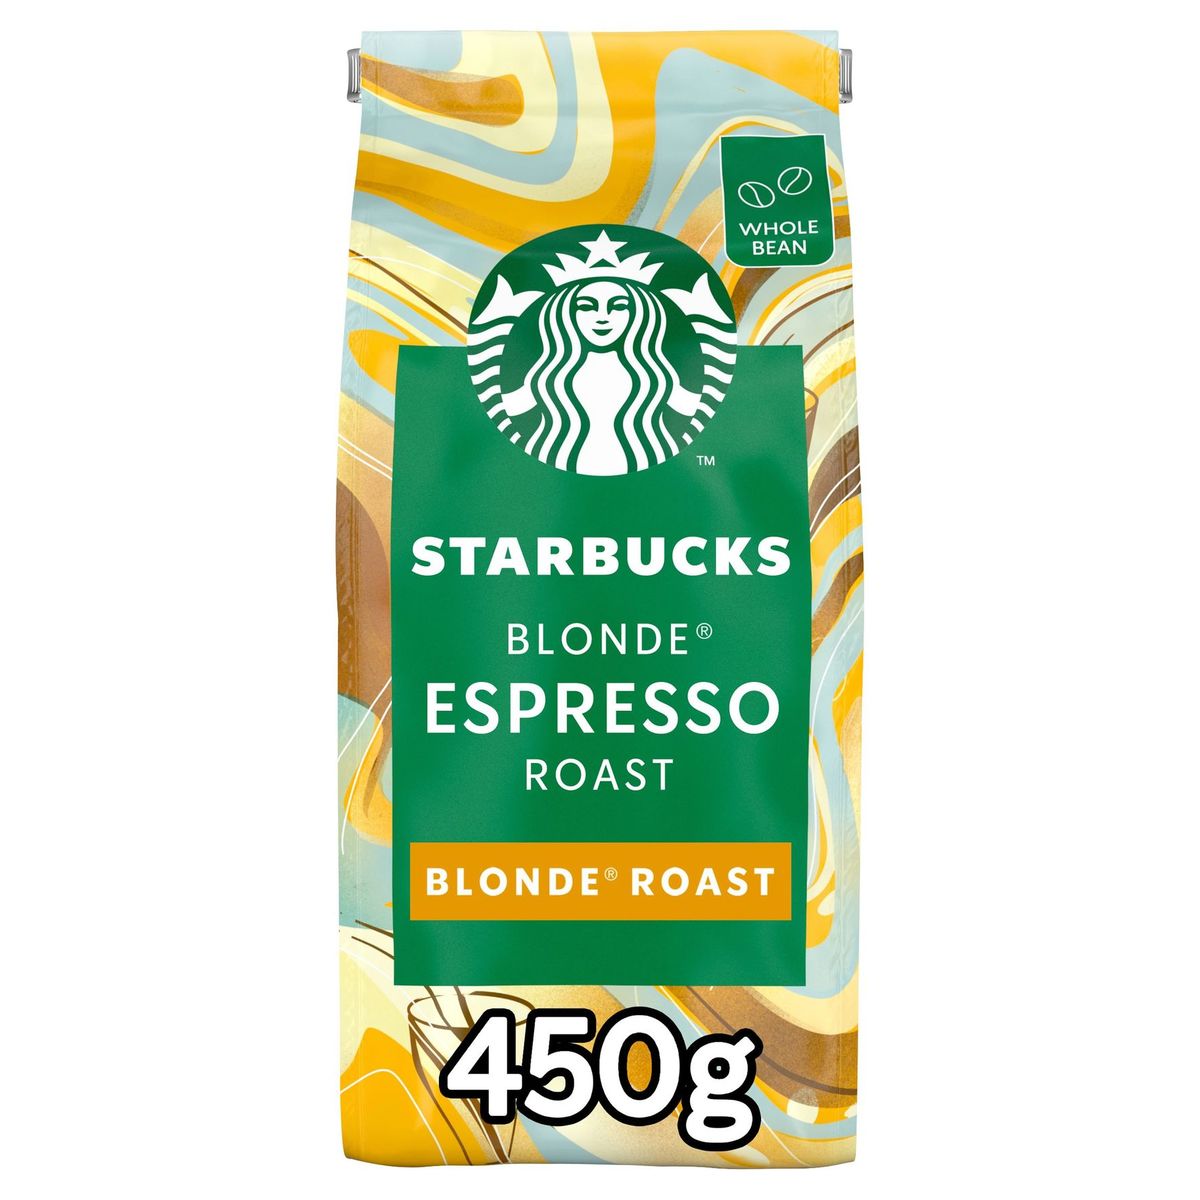 Starbucks Blonde Espresso Roast Koffiebonen Blonde branding 4x450g